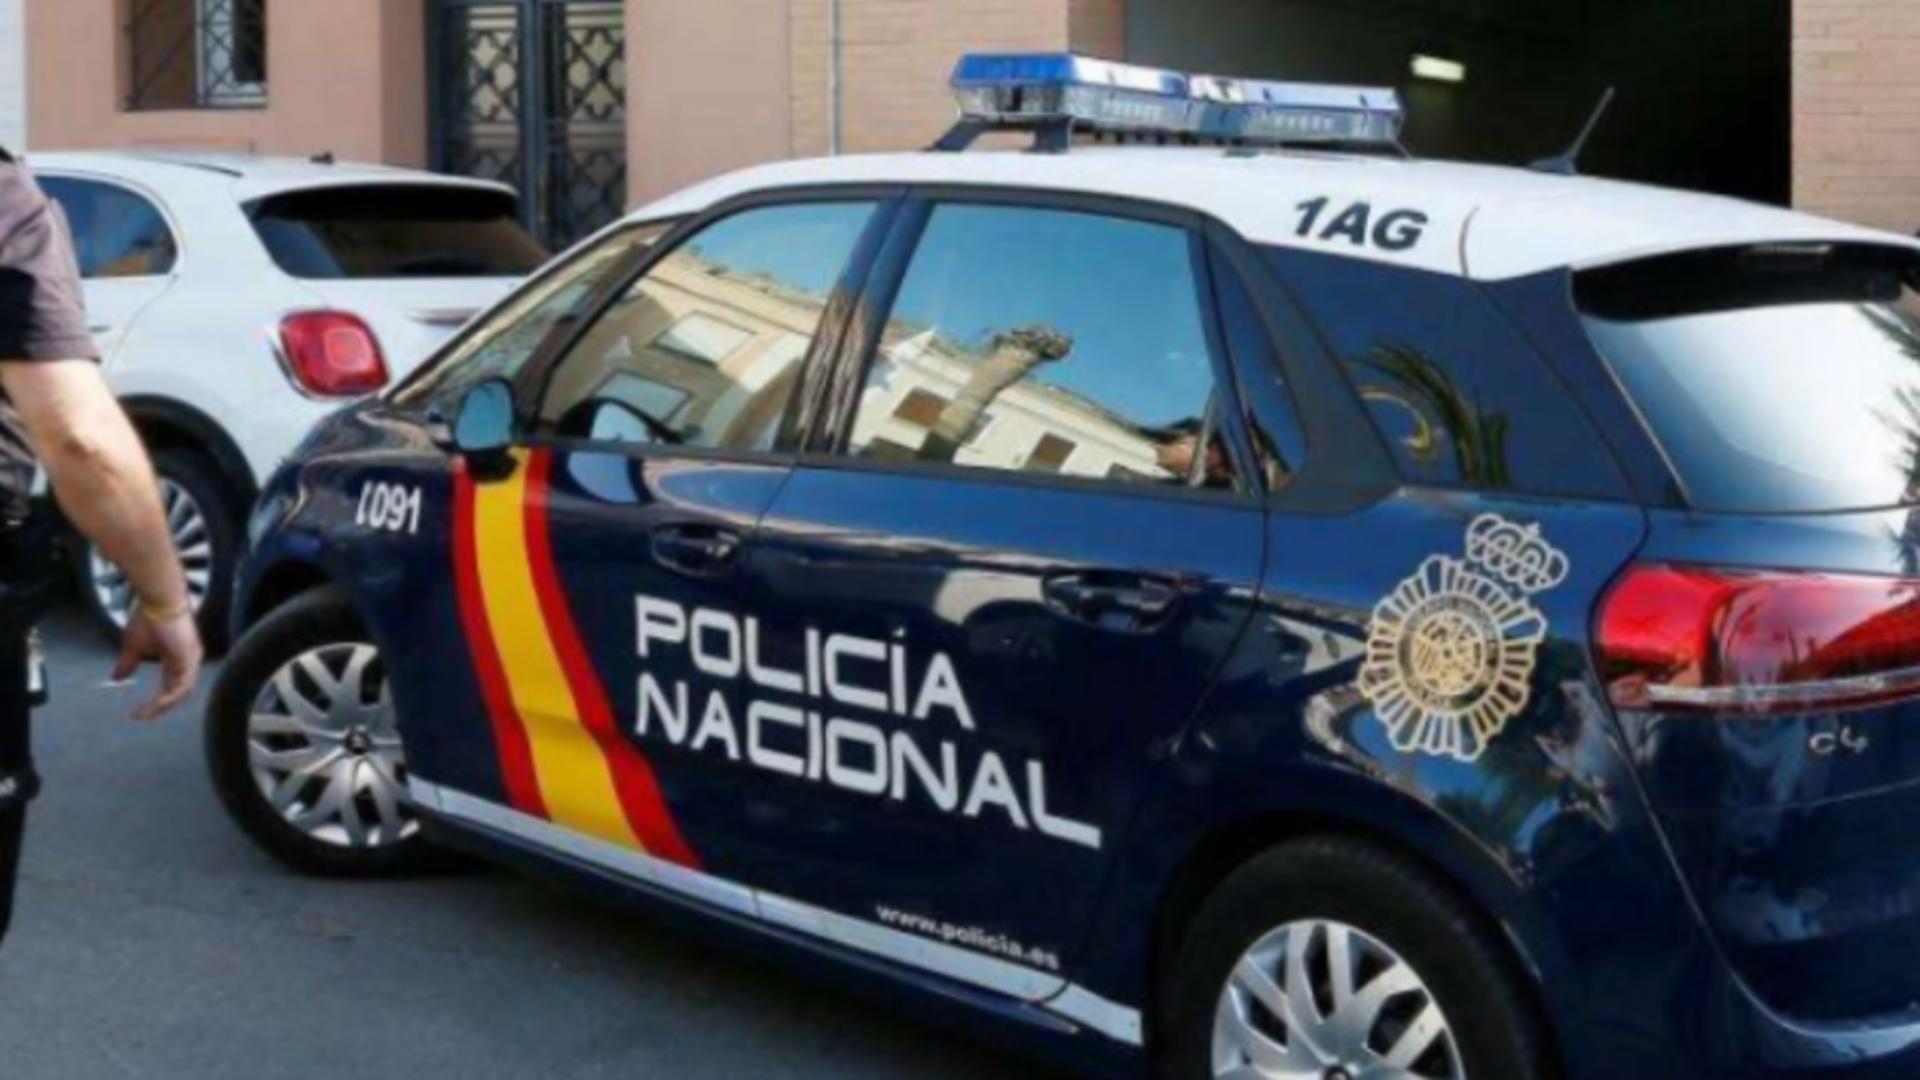 Poliție Spania - imagine de arhivă